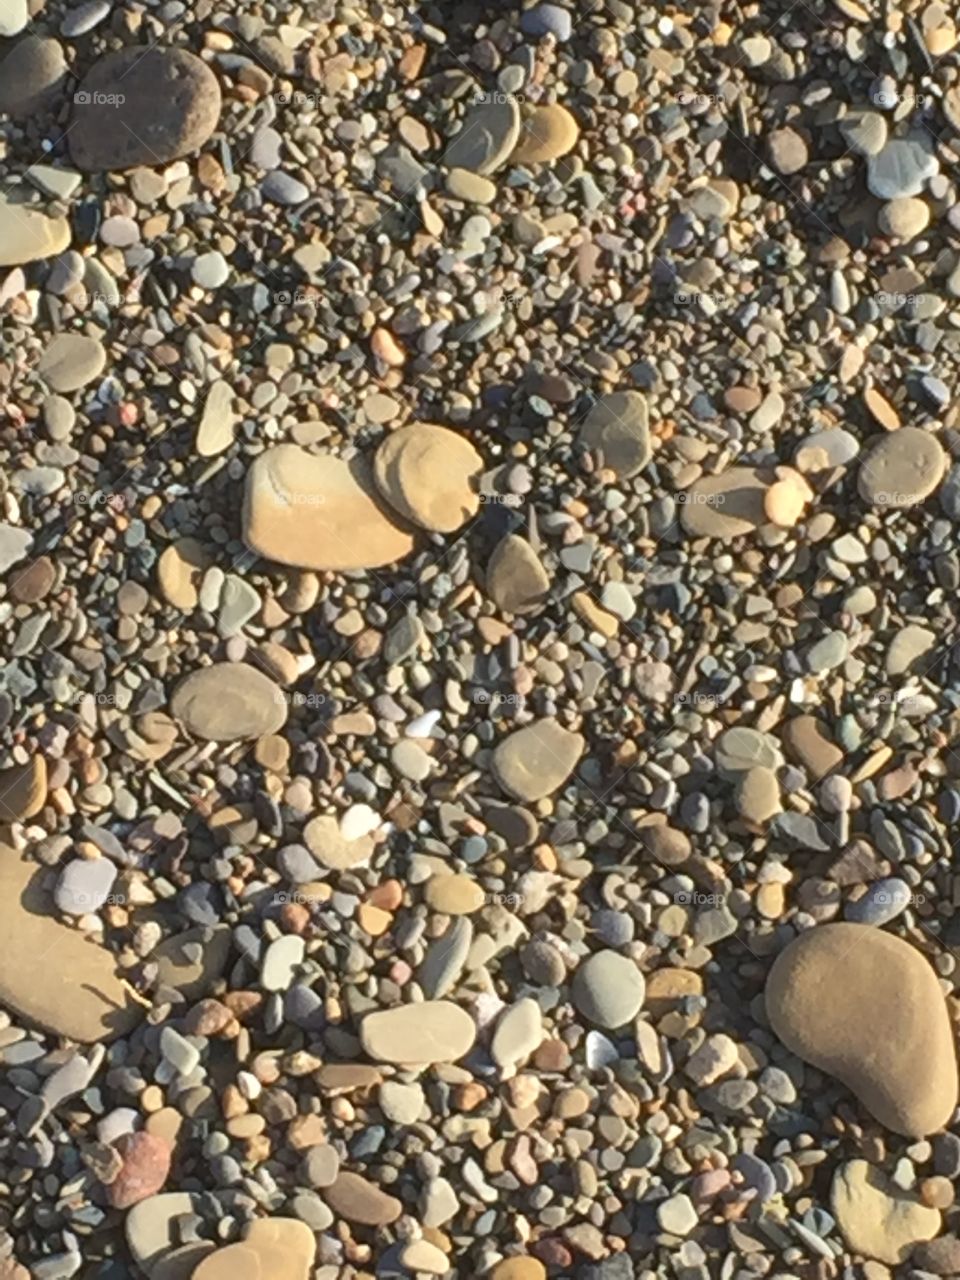 Erie stones